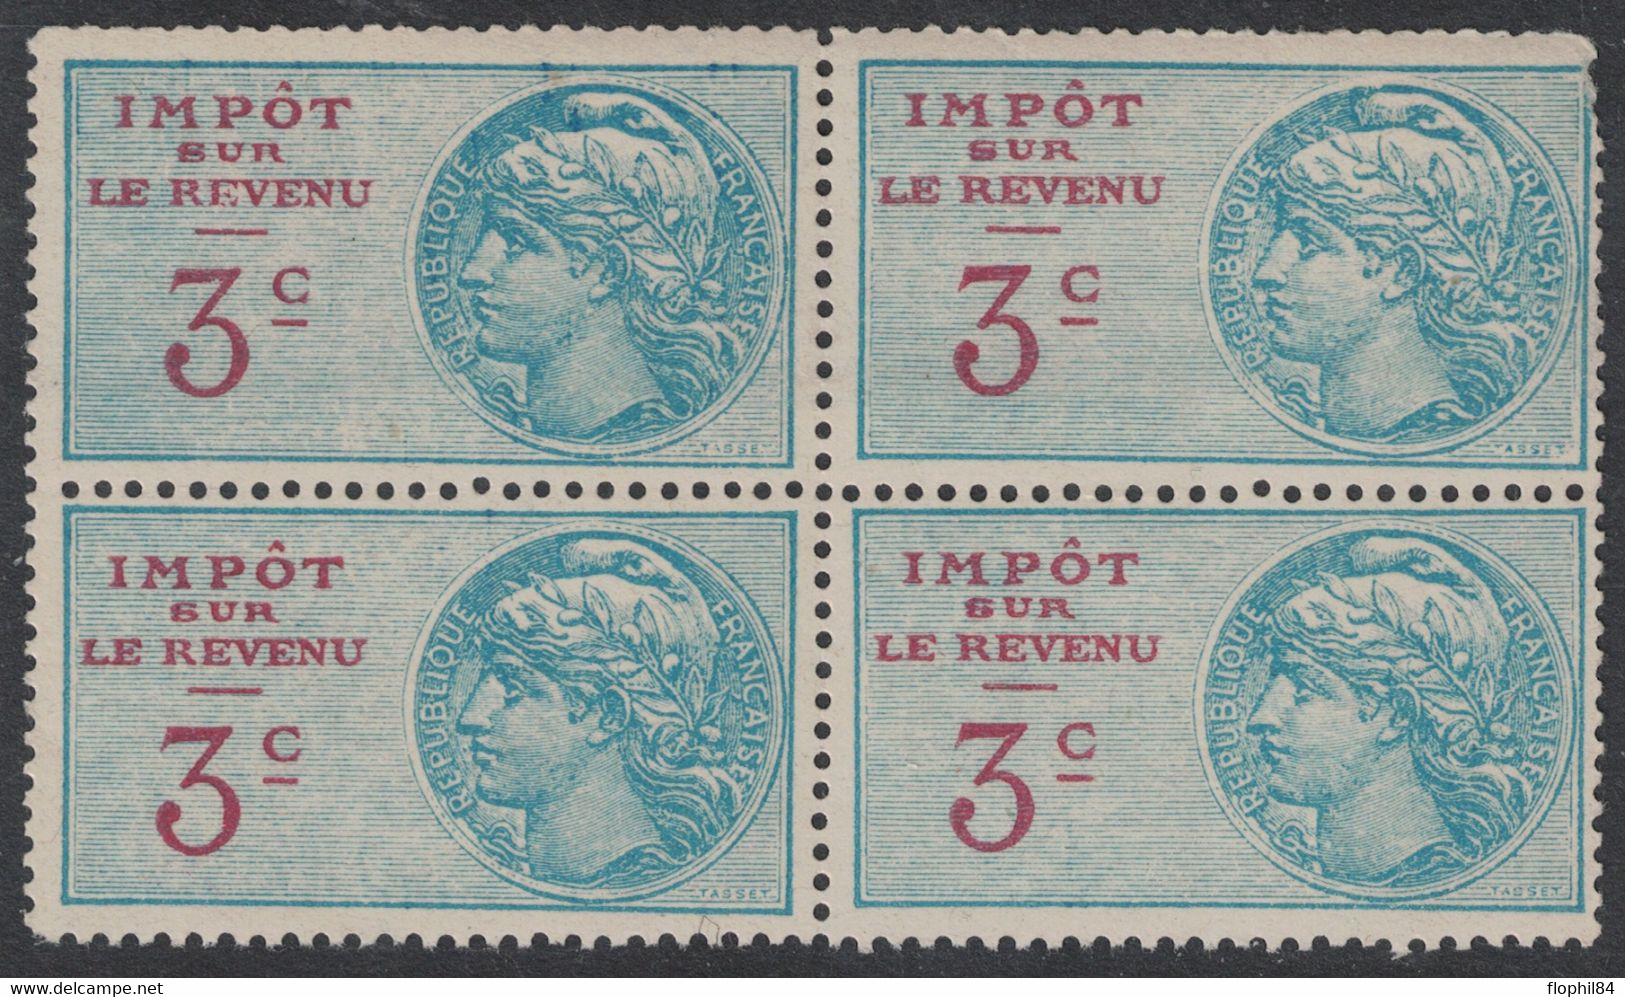 TIMBRE MOBILE - IMPOT SUR LE REVENU - N°89 - BLOC DE 4 AVEC GOMME SANS TRACE - COTE 48€ . - Stamps